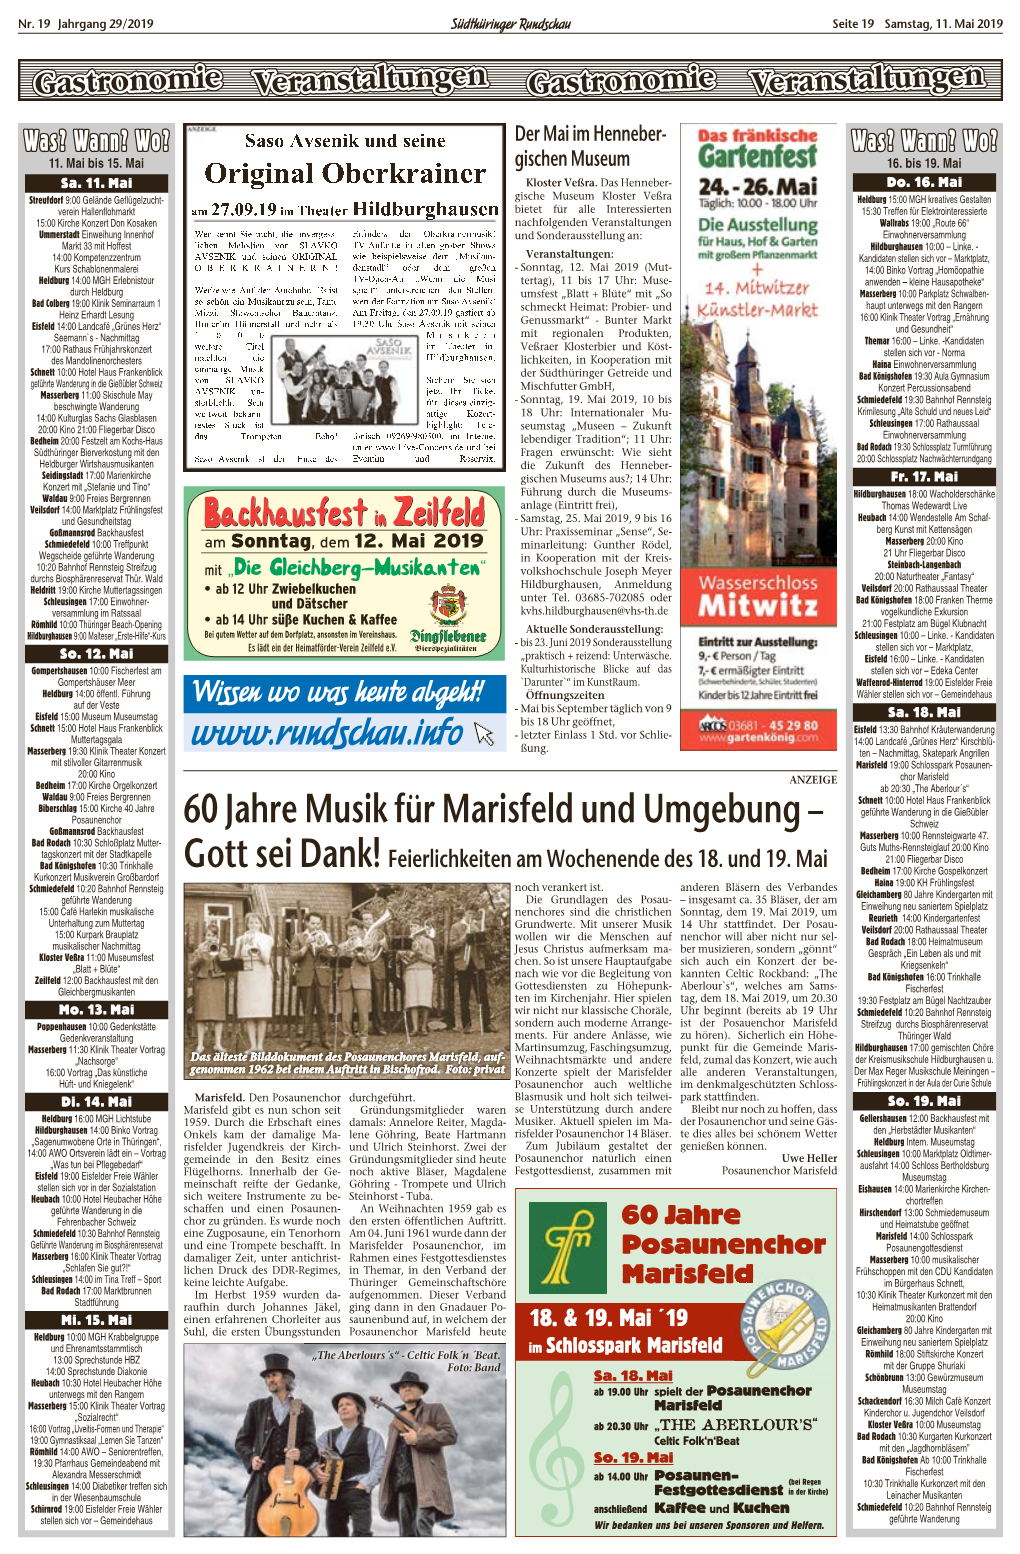 60 Jahre Musik Für Marisfeld Und Umgebung – Schweiz Goßmannsrod Backhausfest Masserberg 10:00 Rennsteigwarte 47